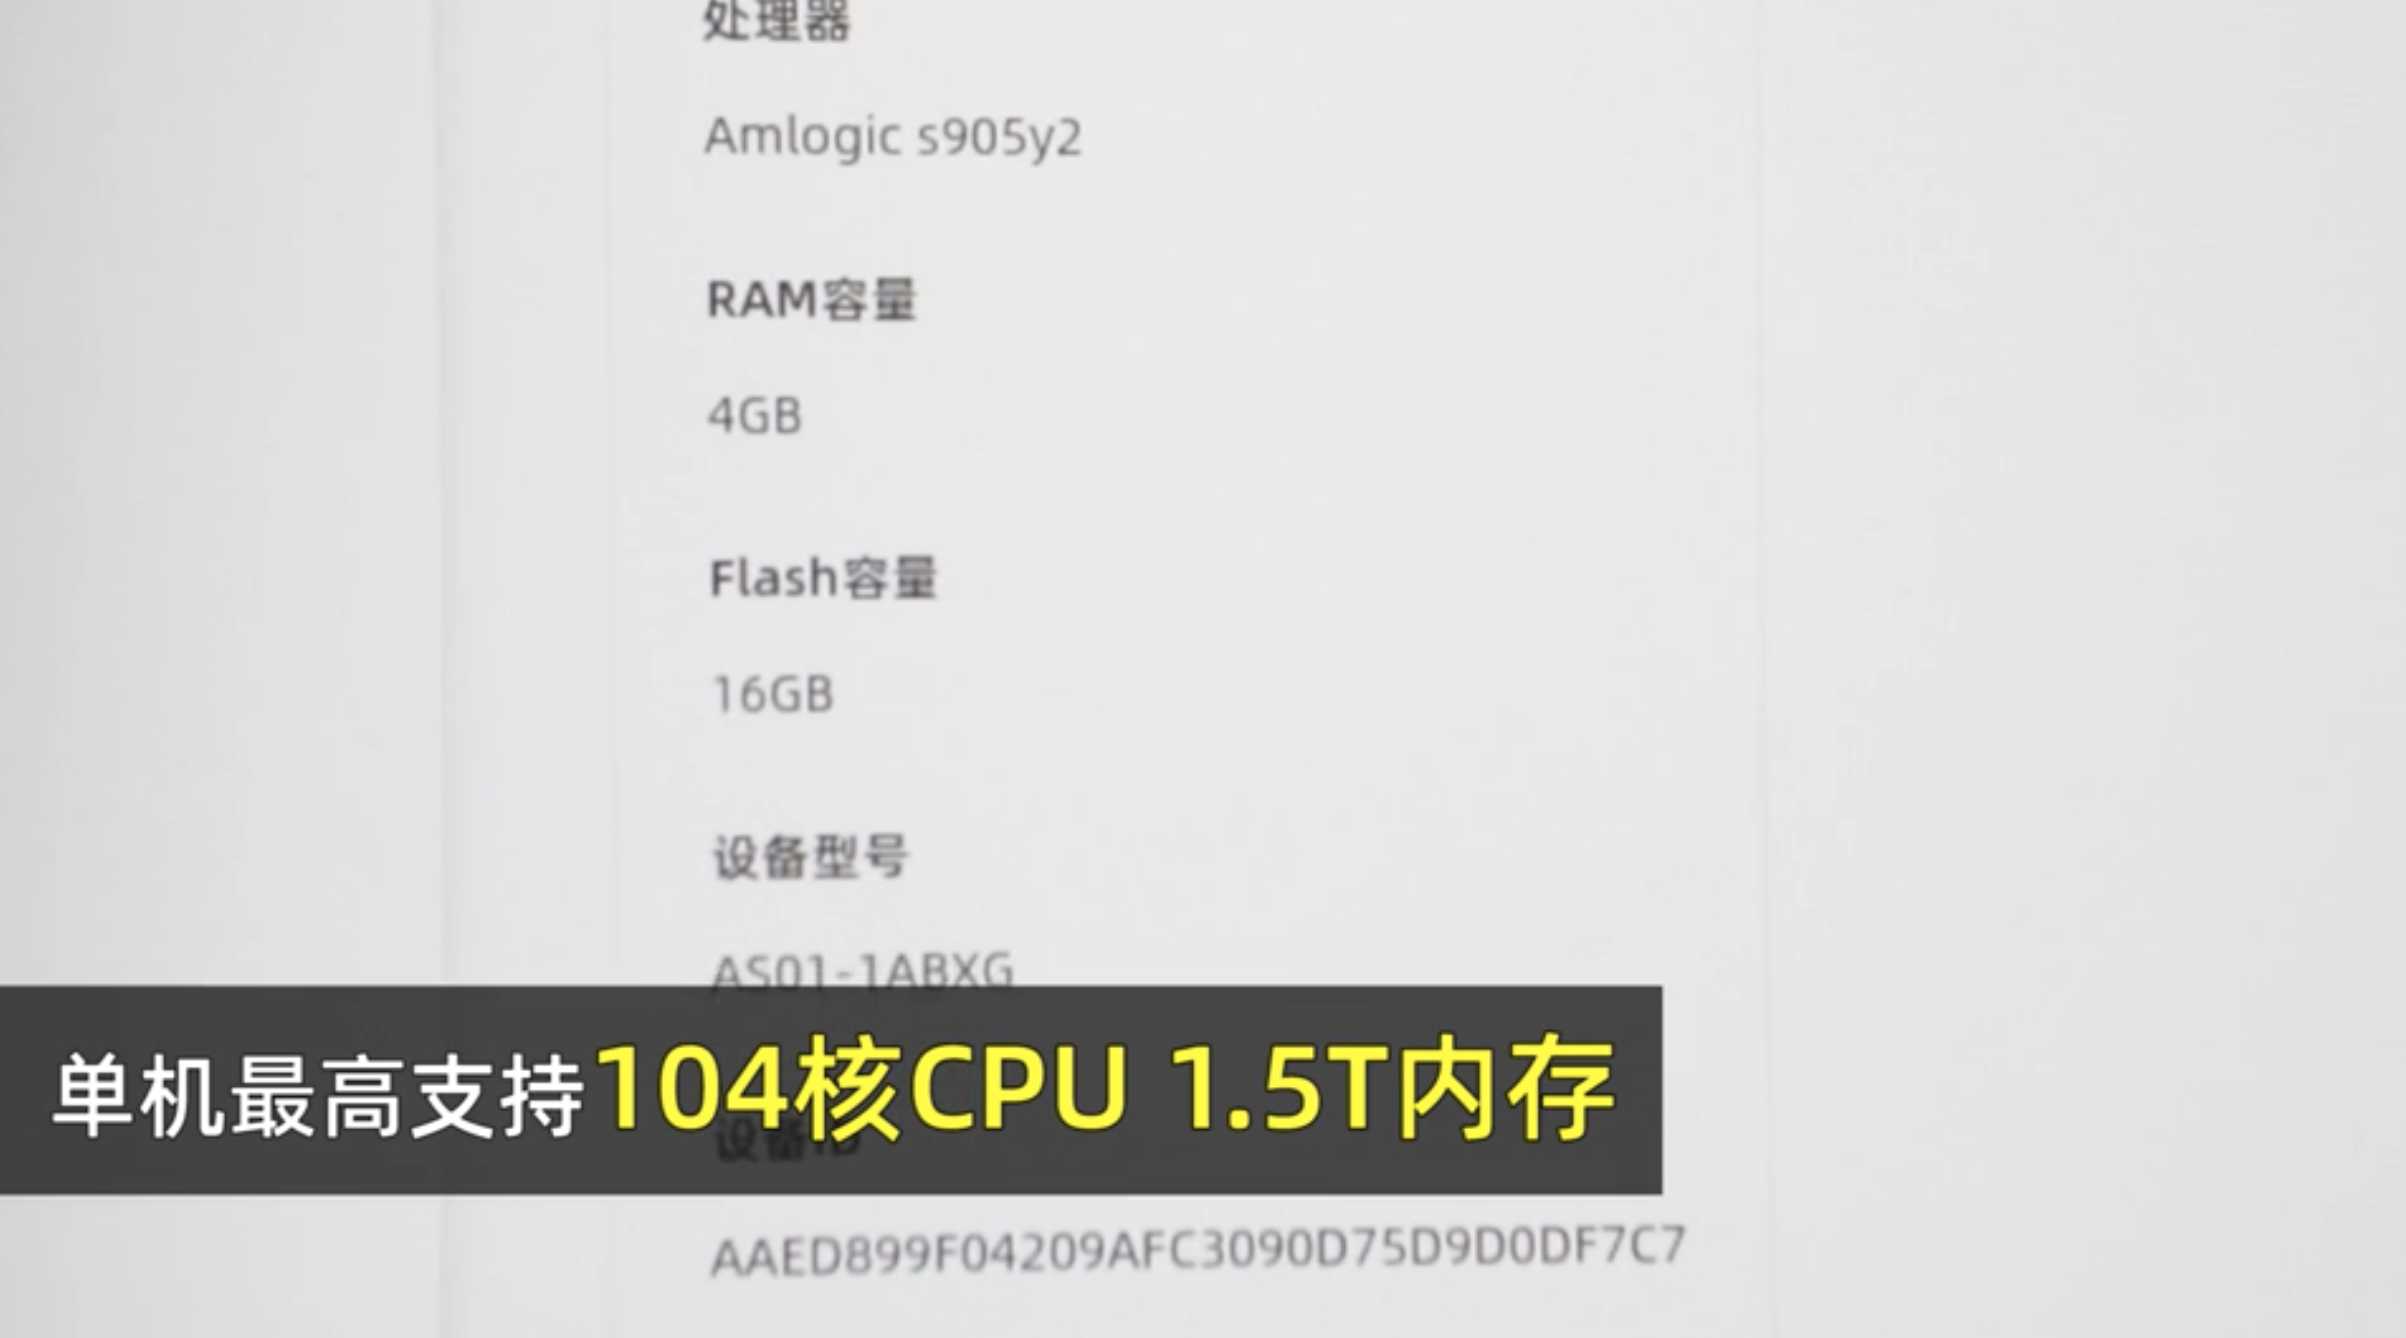 104 核 CPU 和 1.5T 内存指云端的性能。